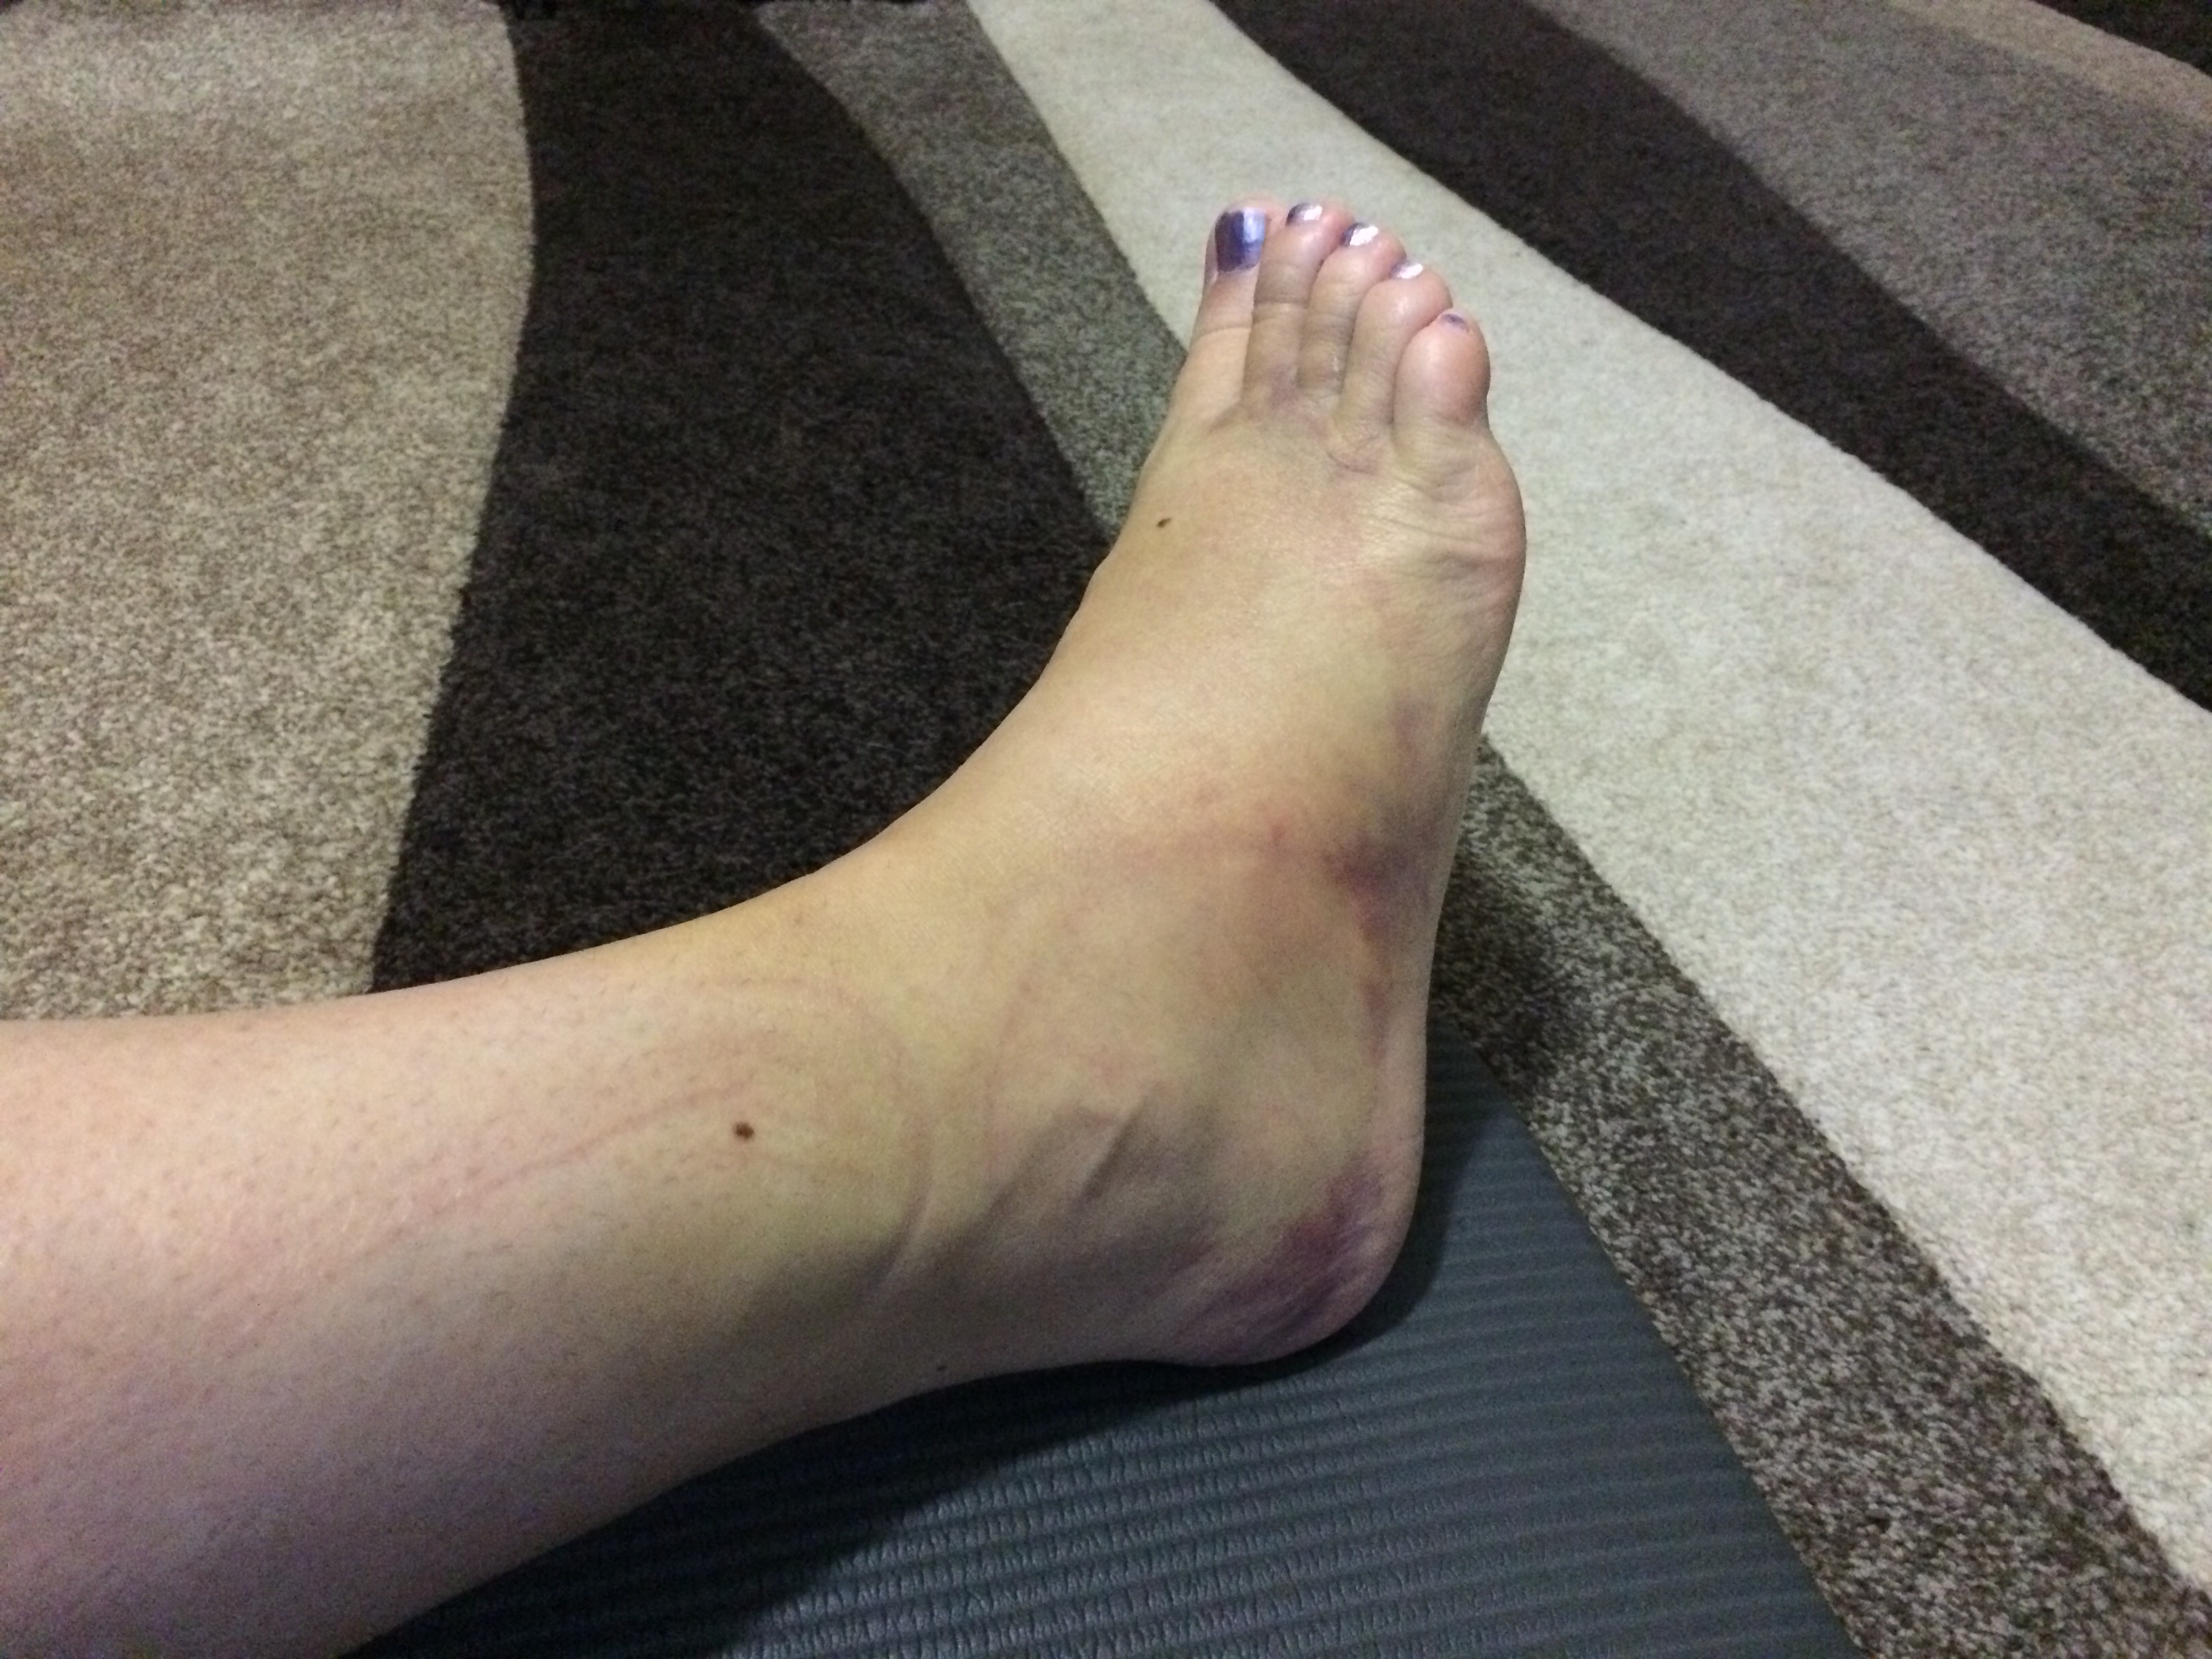 Ankle sprain day 11.